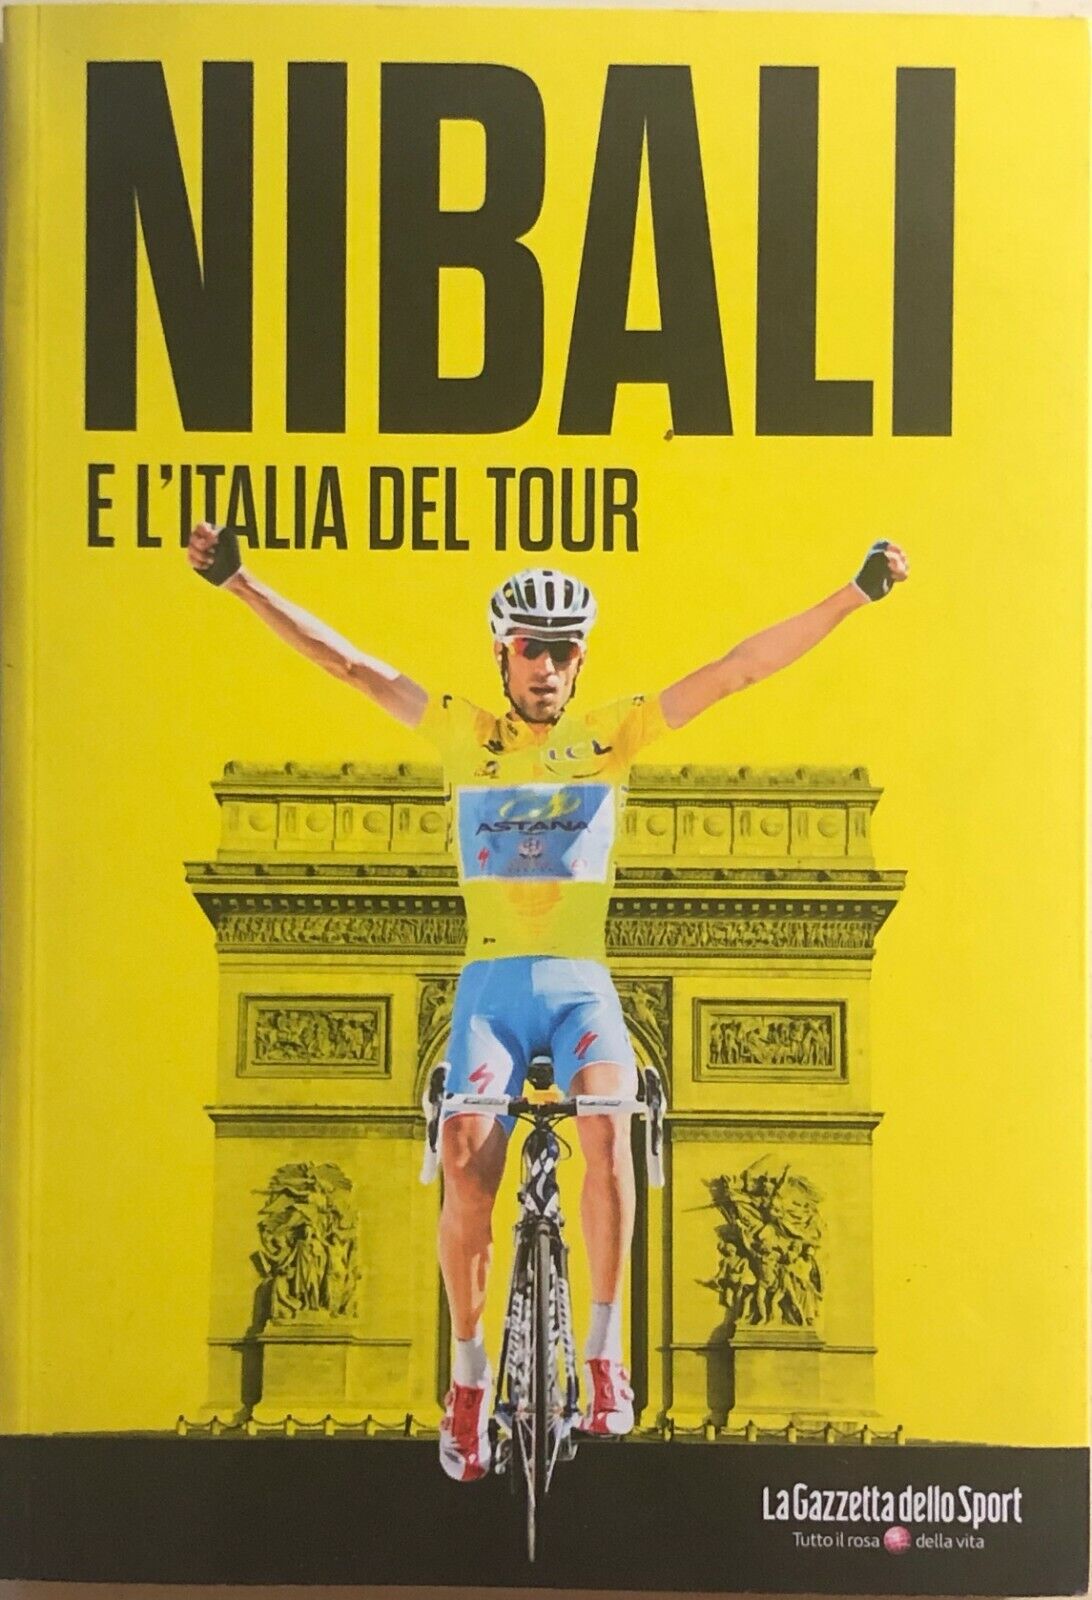 Nibali e L'Italia del tour di Aa.vv., 2014, La Gazzetta Dello Sport